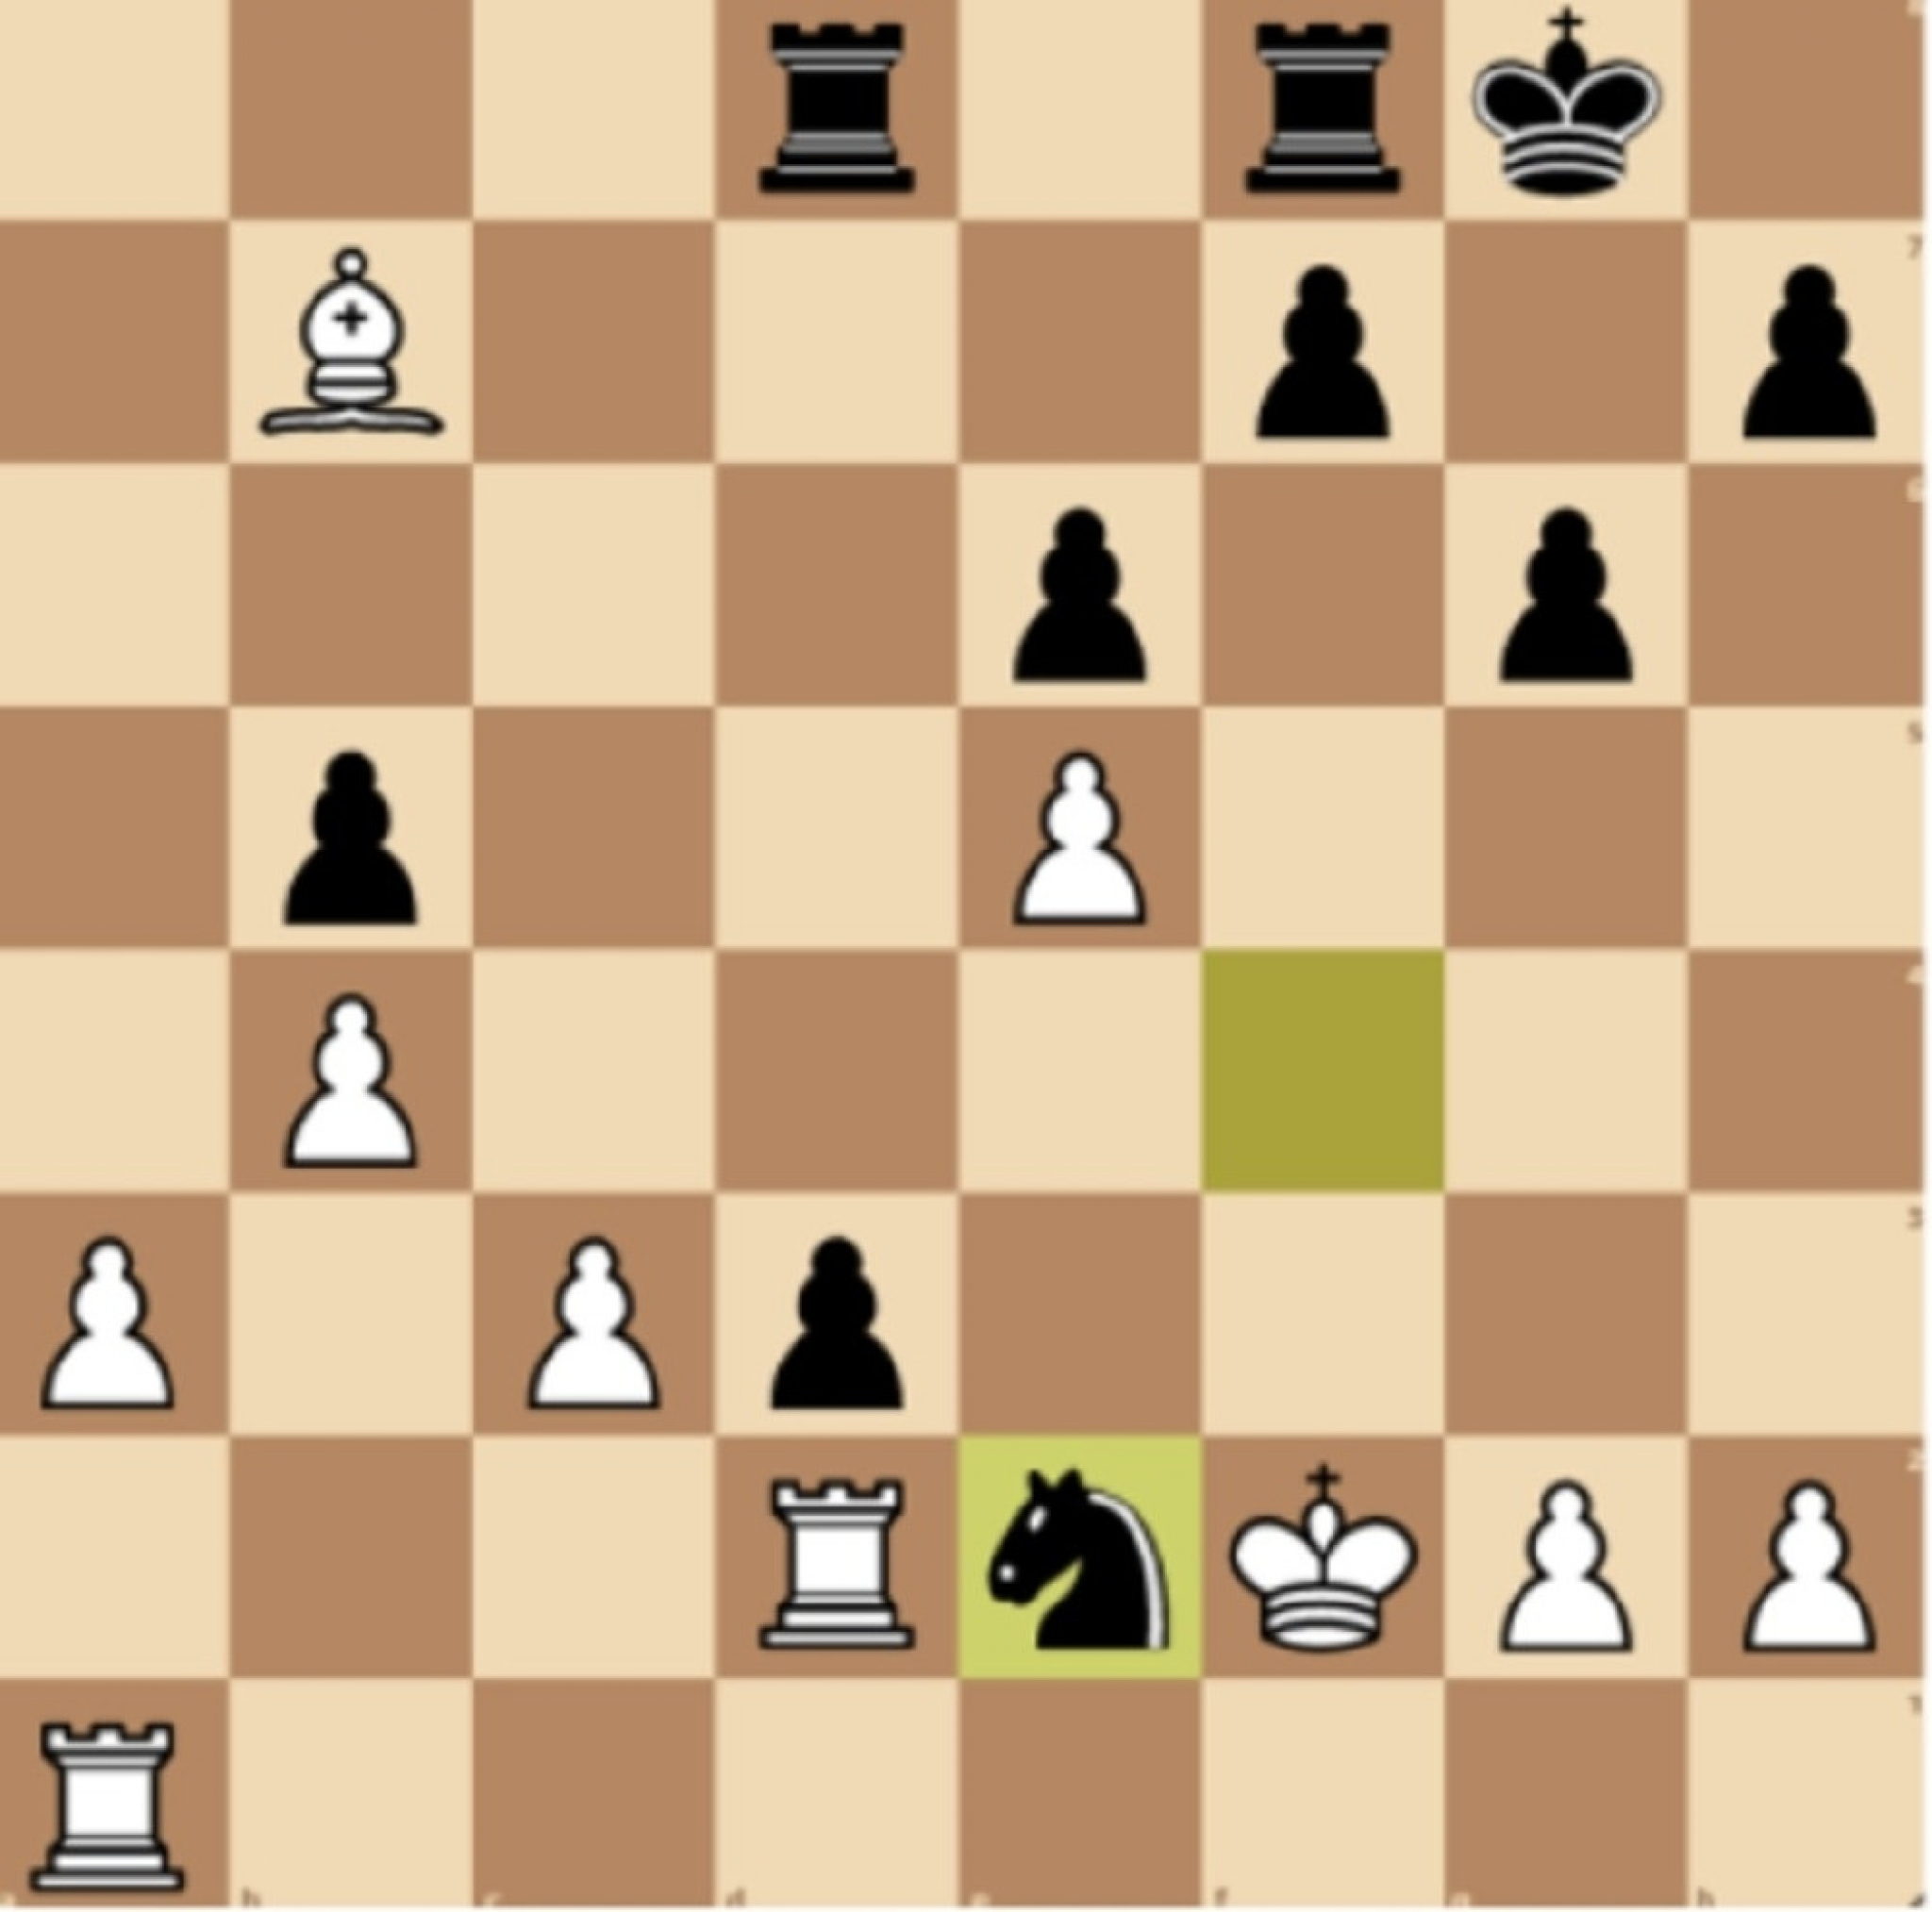 šah analiza